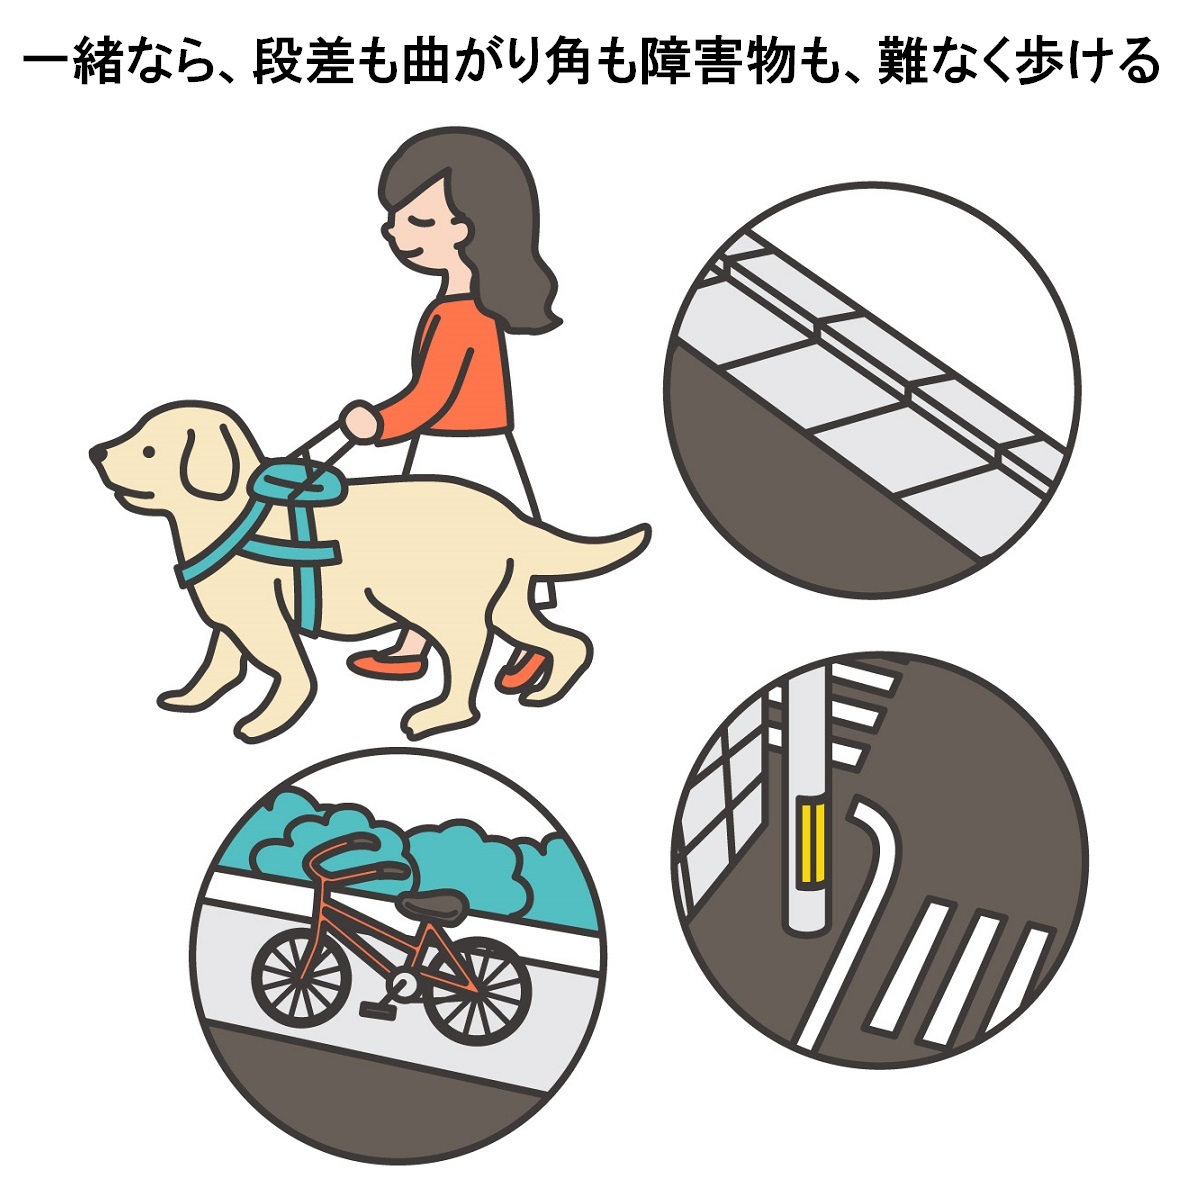 盲導犬と歩いている女性のイラスト。テキスト：一緒なら、段差も曲がり角も障害物も、難なく歩ける